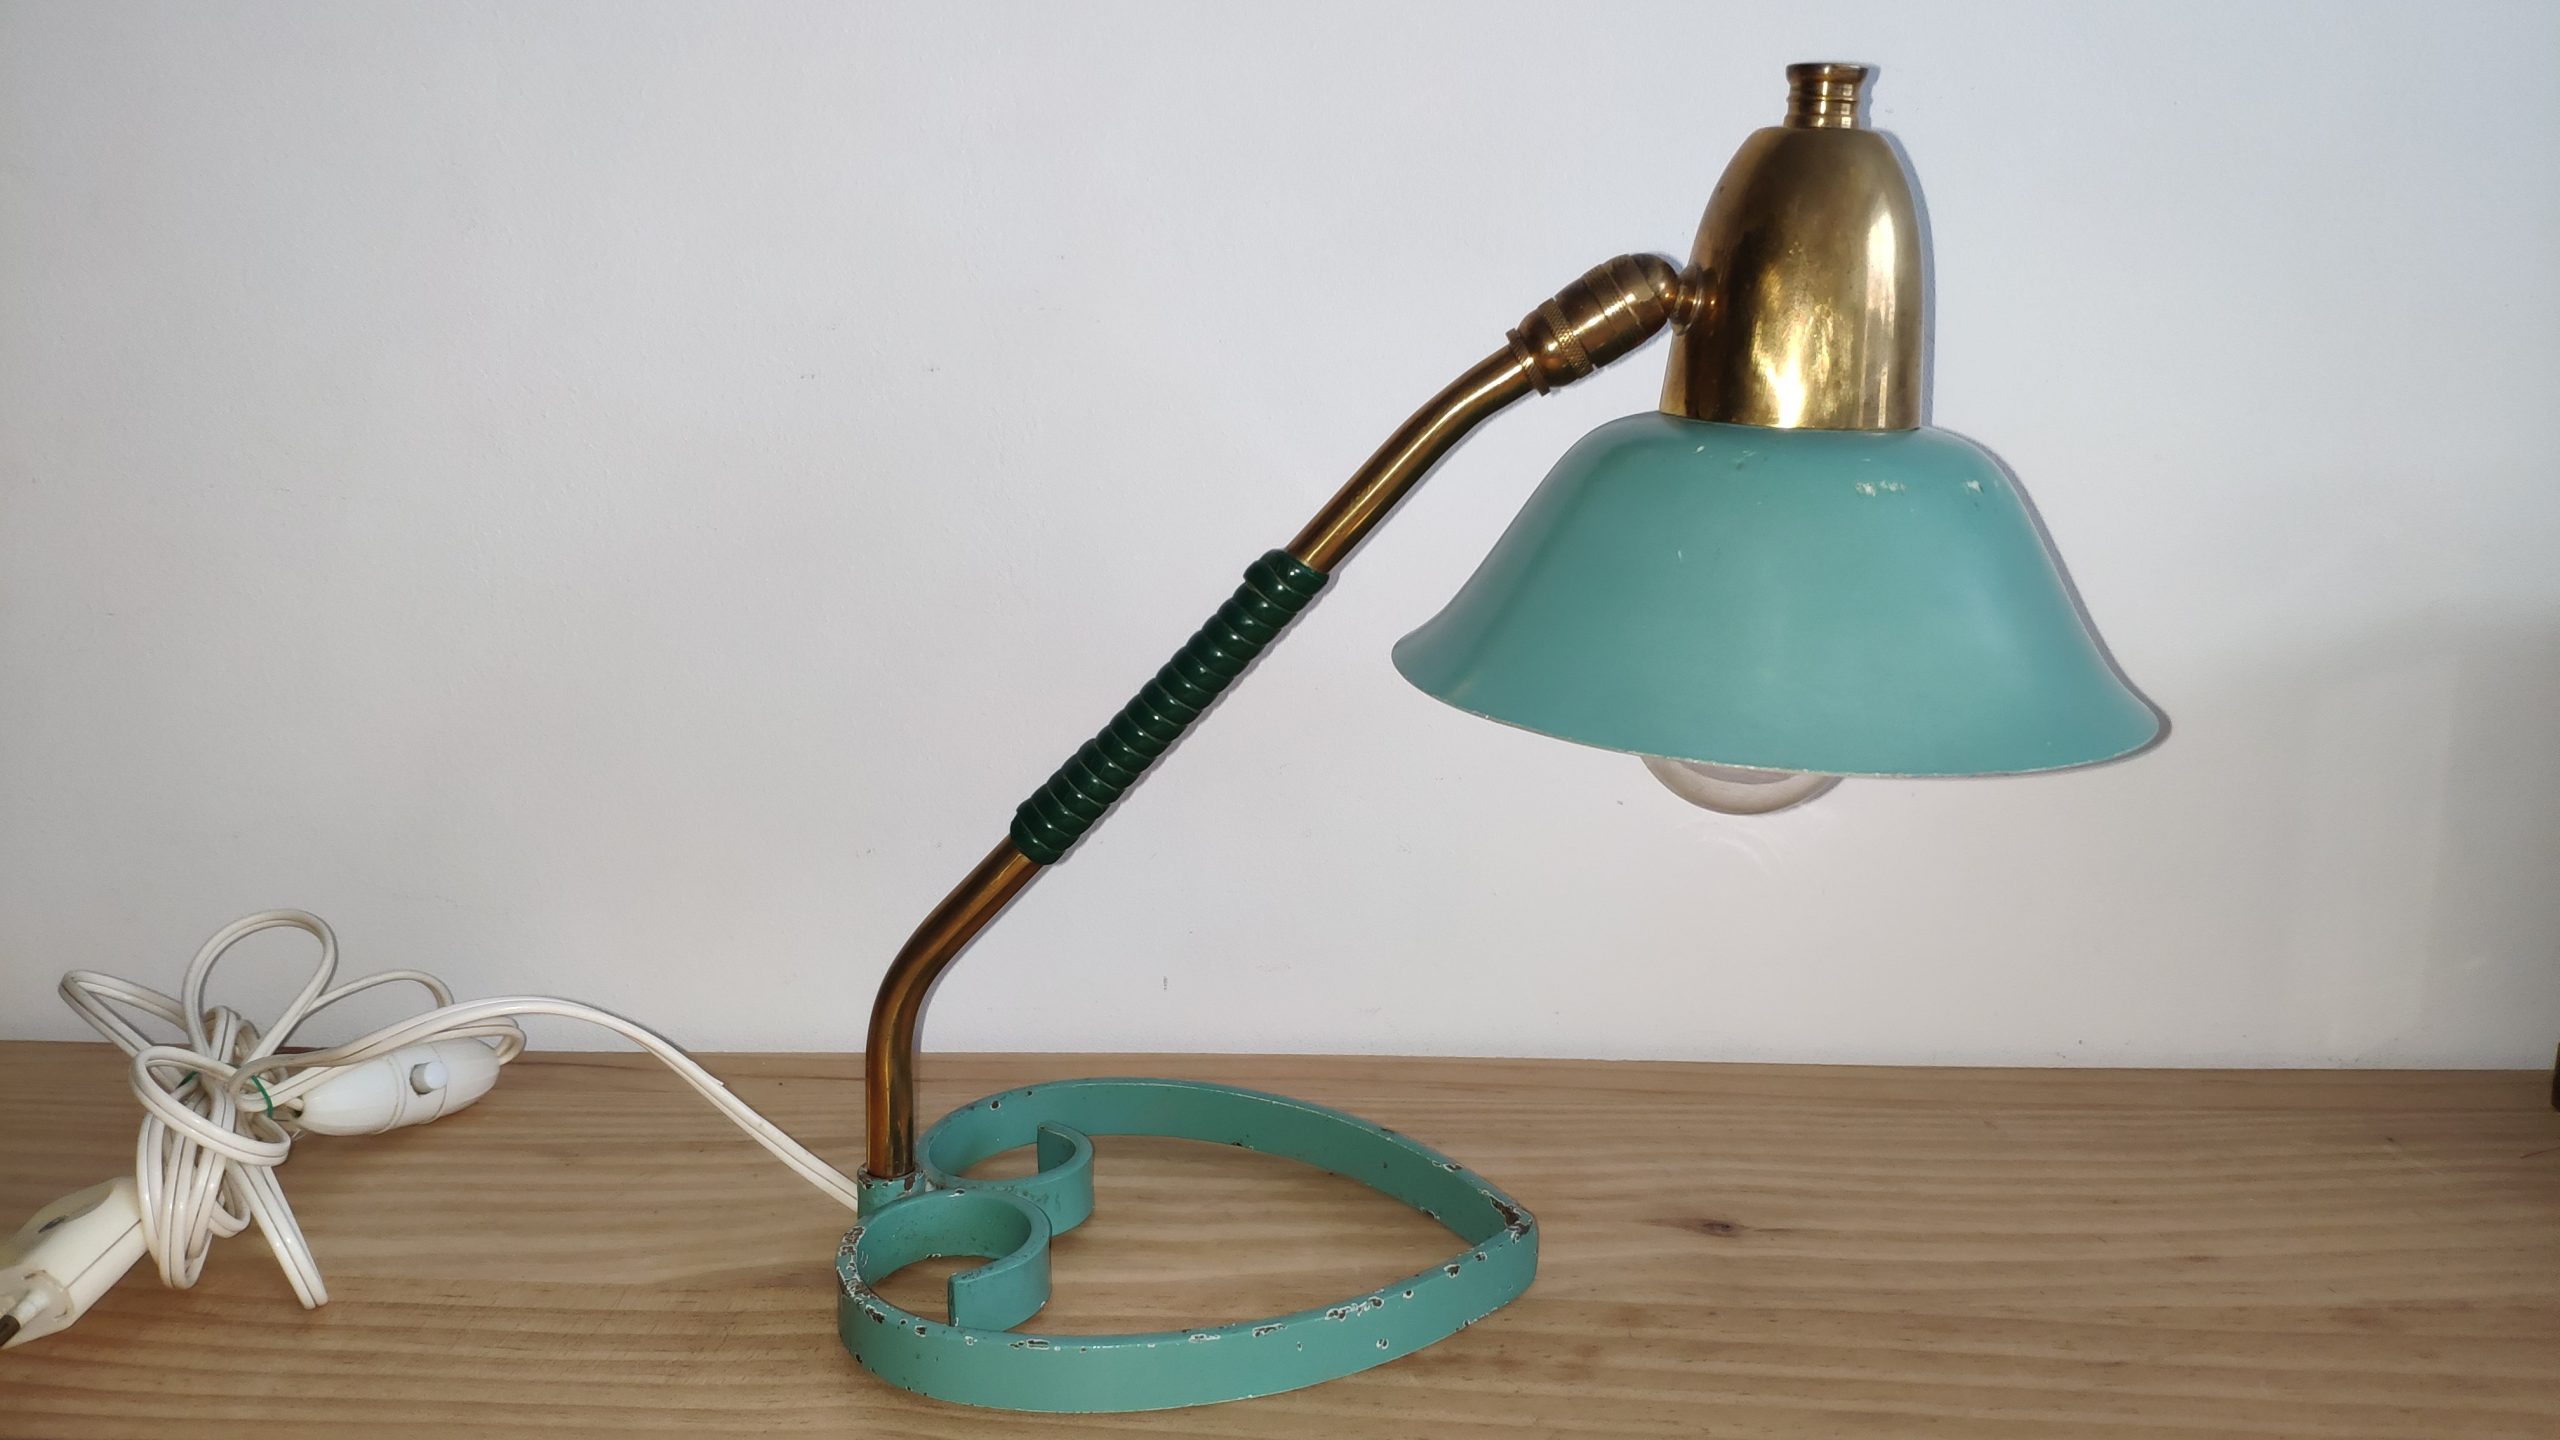 Lampe vintage atypique - brokepoque - atypical desk lamp.